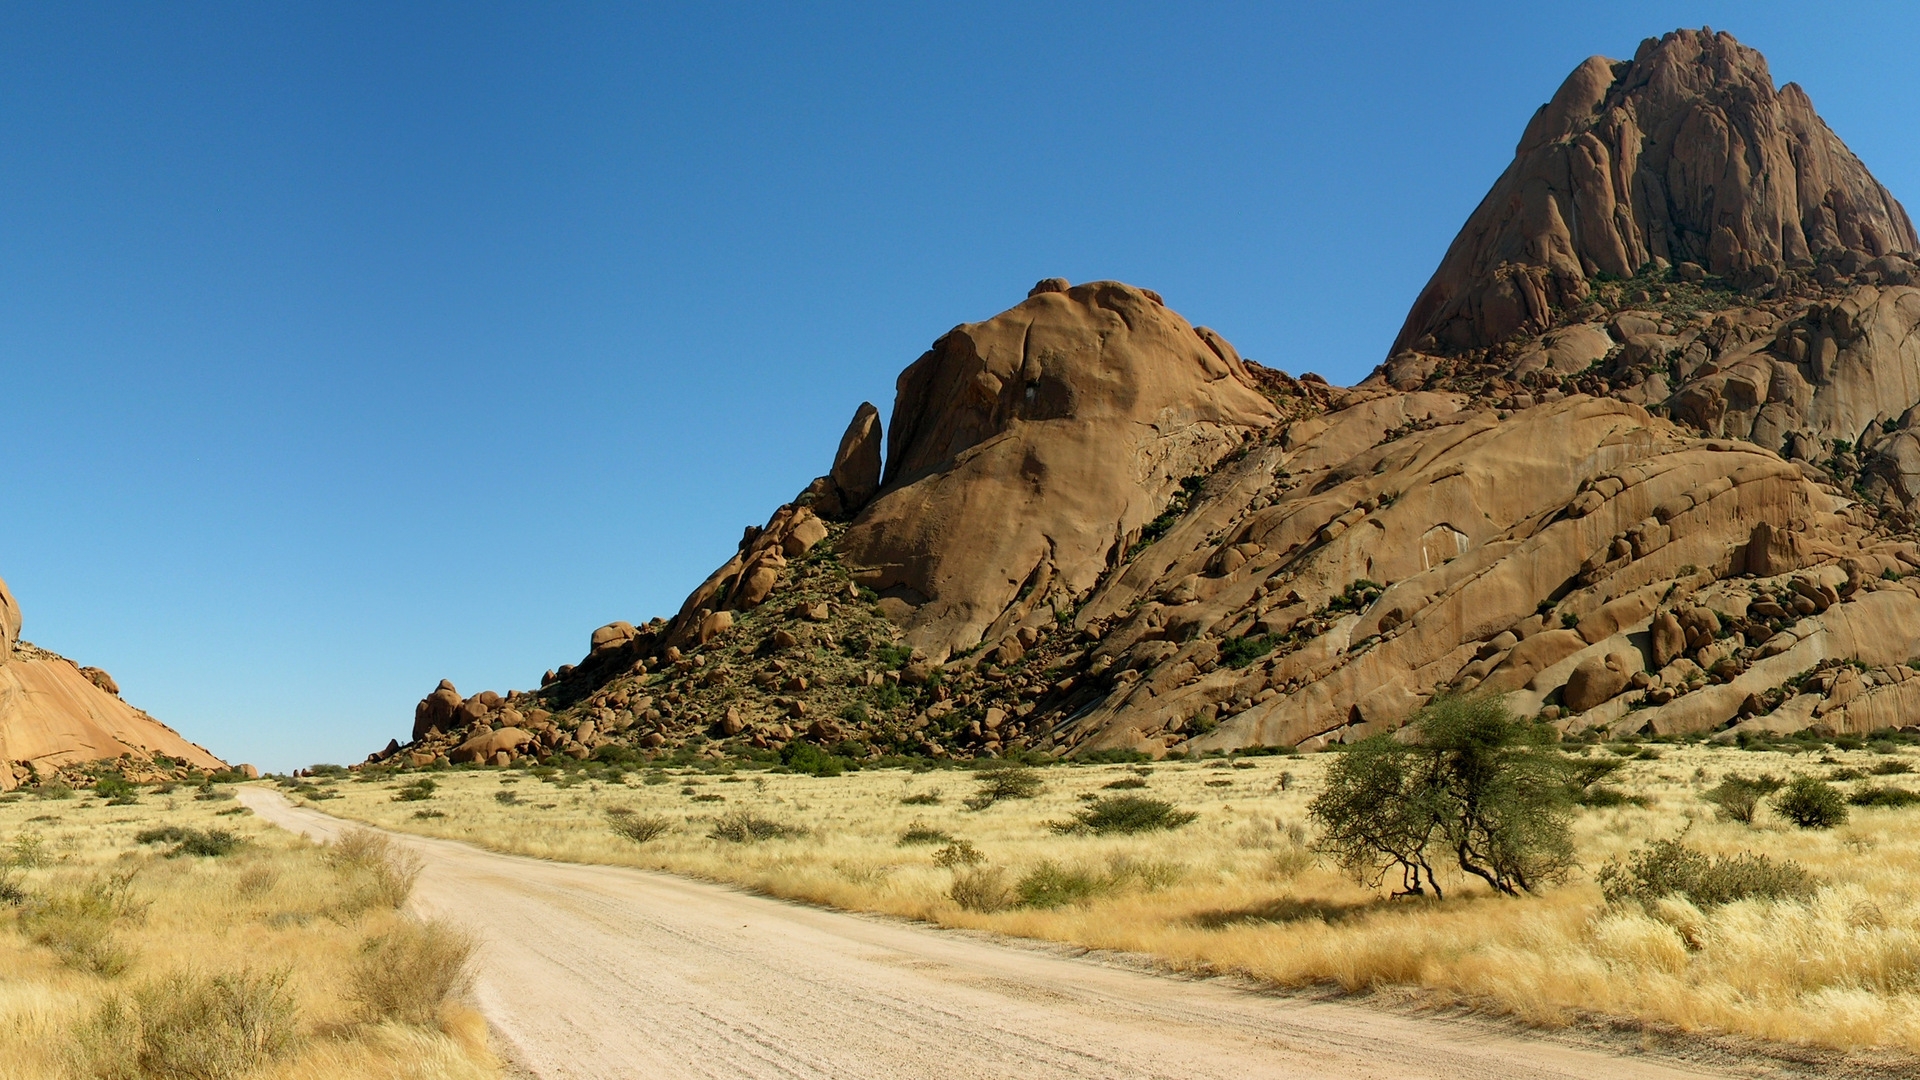 Road in Desert for 1920 x 1080 HDTV 1080p resolution